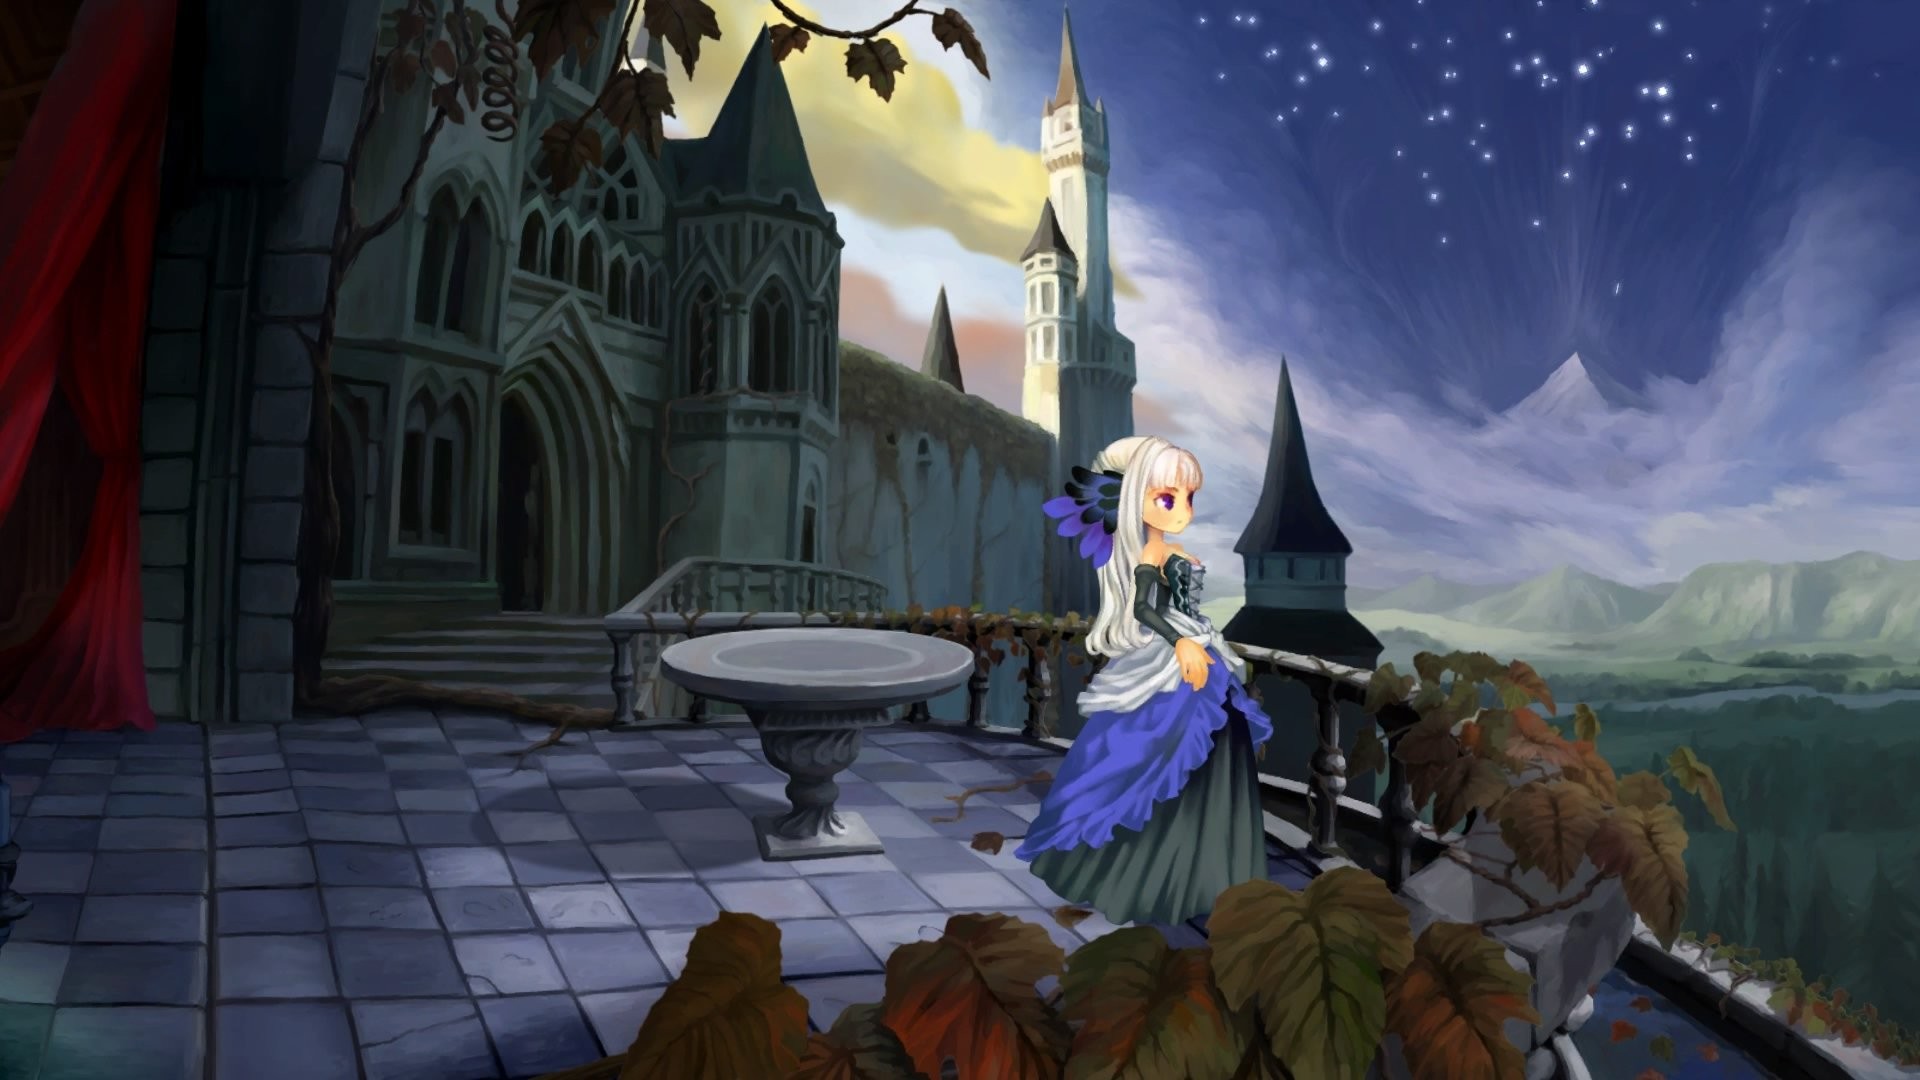 Anime 1920x1080 Odin Sphere anime girls fantasy girl anime castle blonde fantasy art